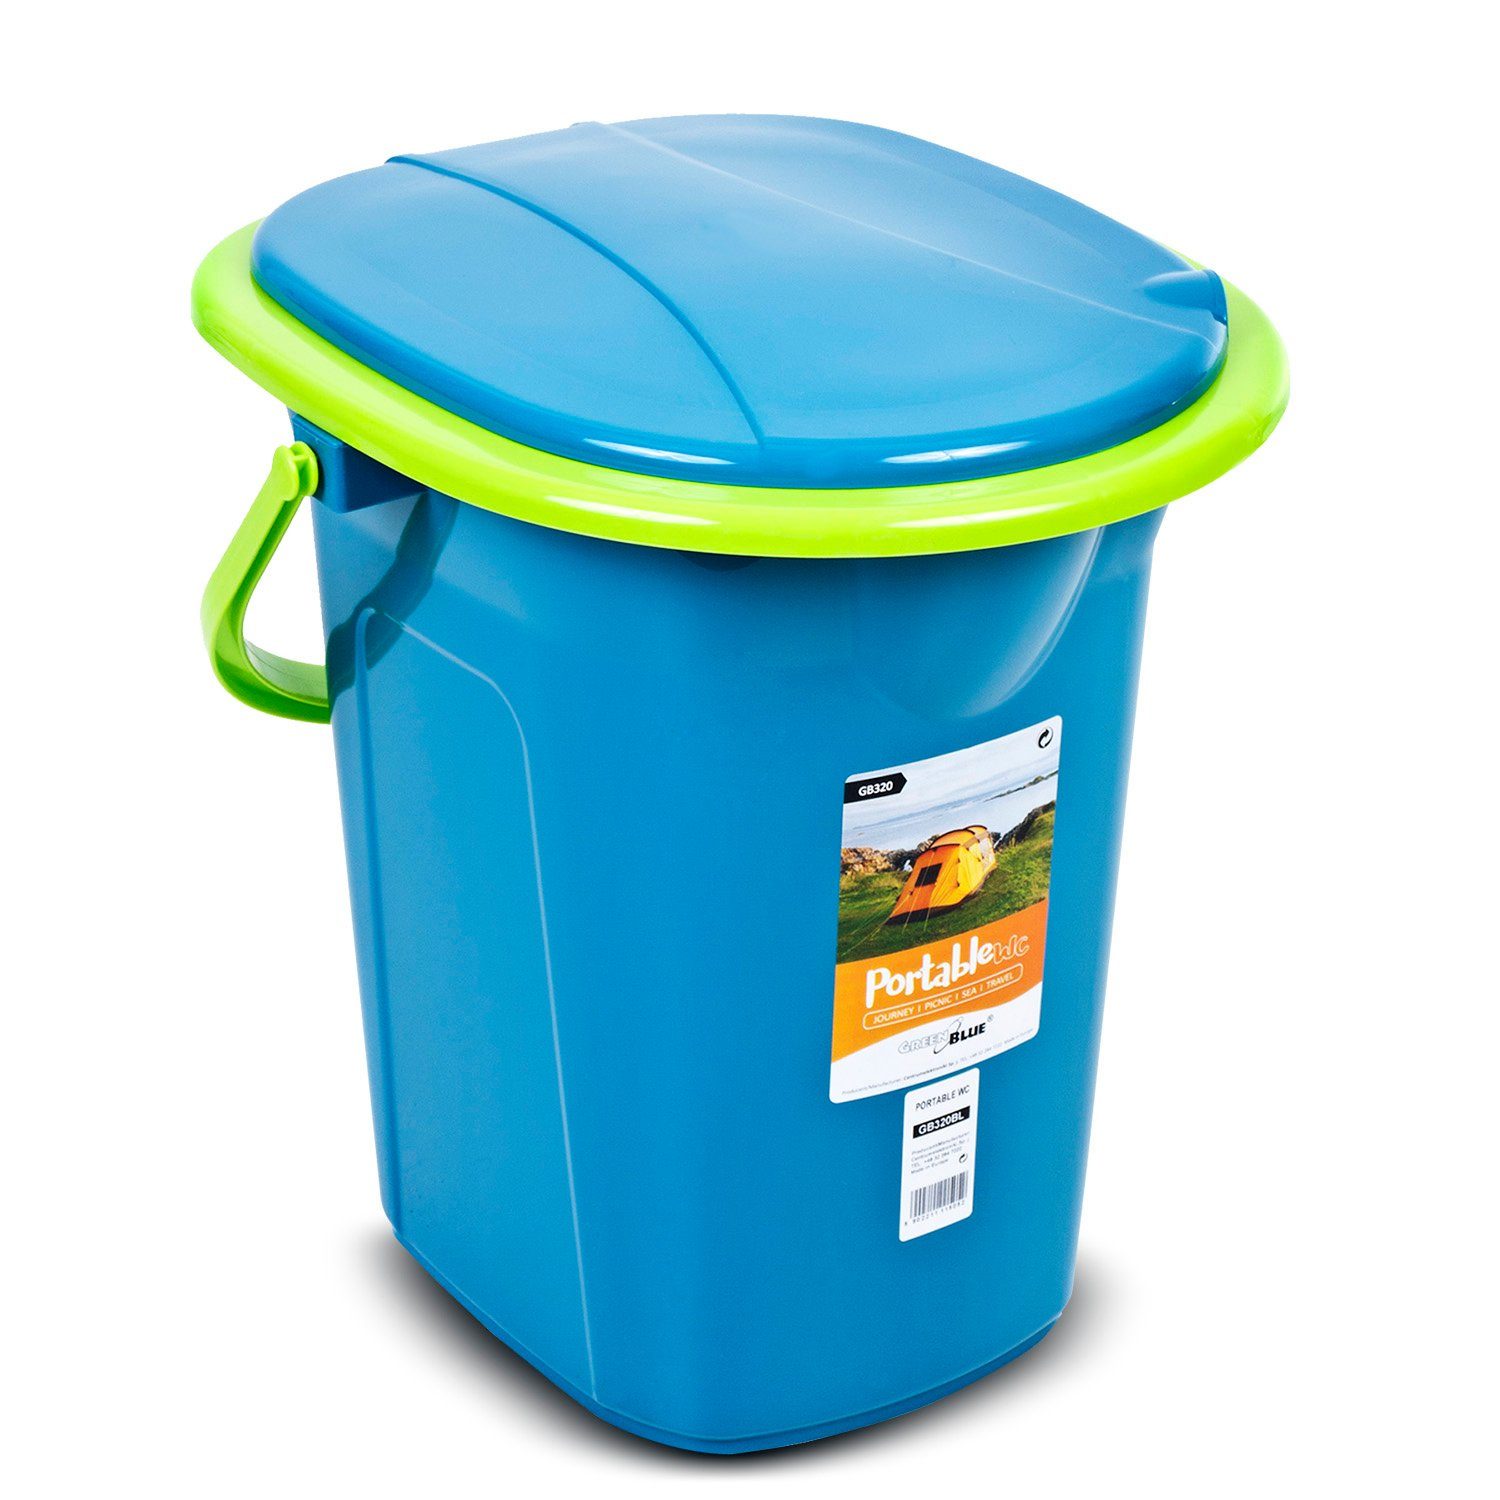 GreenBlue Campingtoilette GB320, mit Tragegriff Auskipp-Hilfe Toilettenpapierhalter / Türkis-Limone und